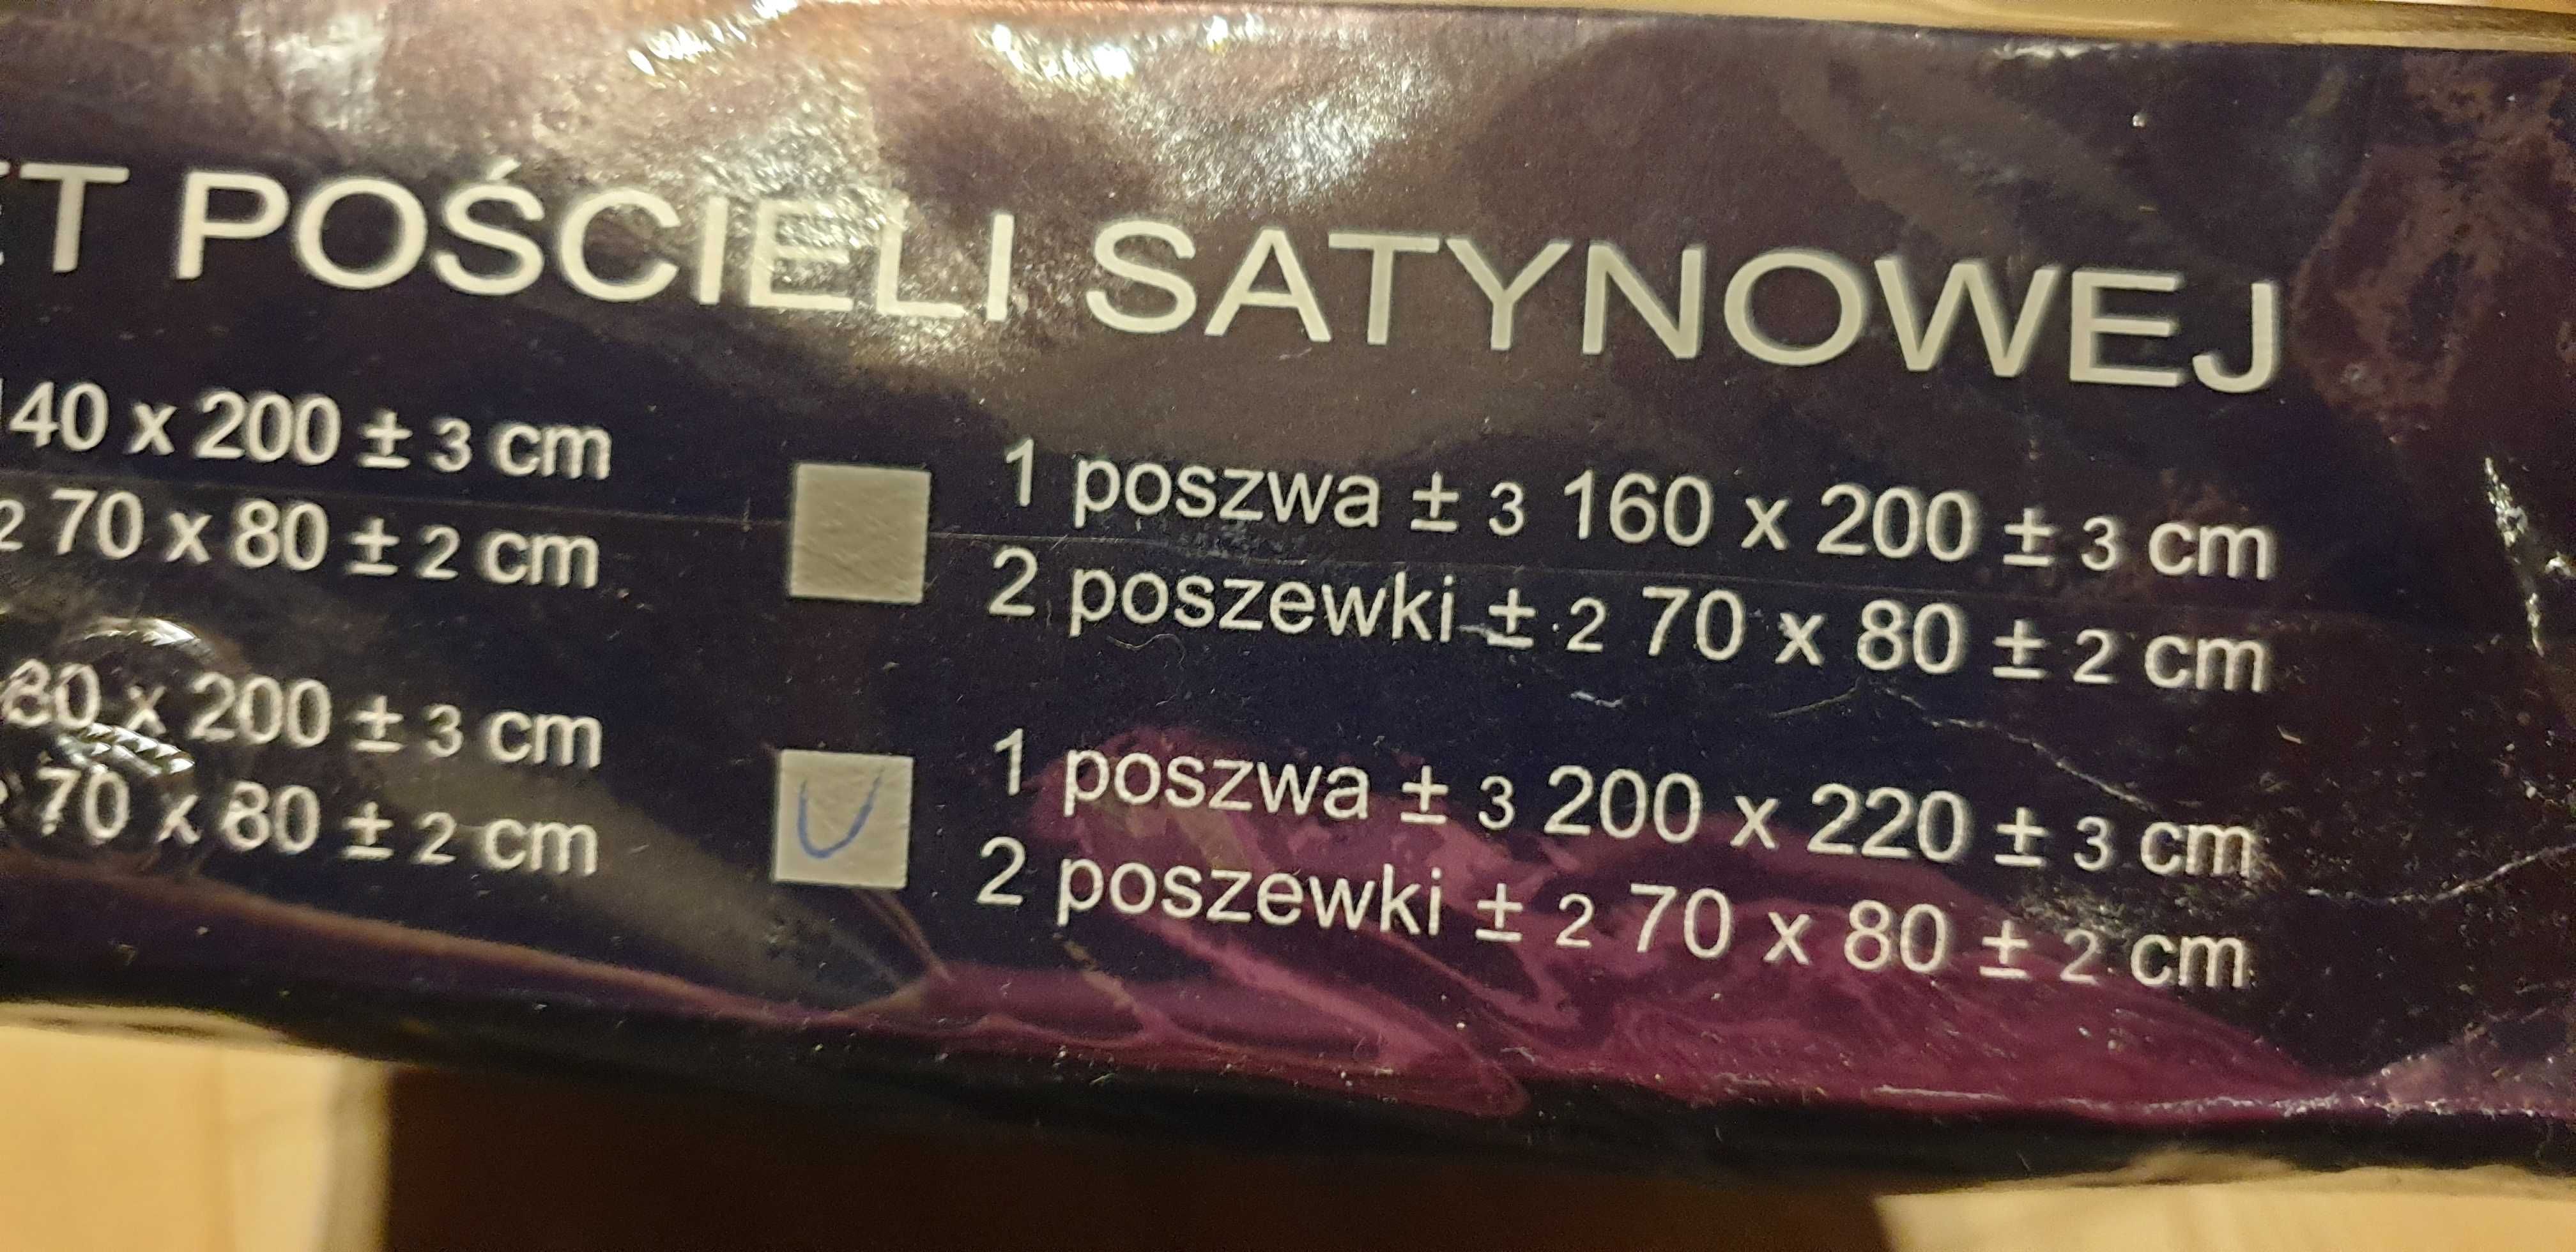 Komplet pościeli satynowej bawełna satynowa polska firma